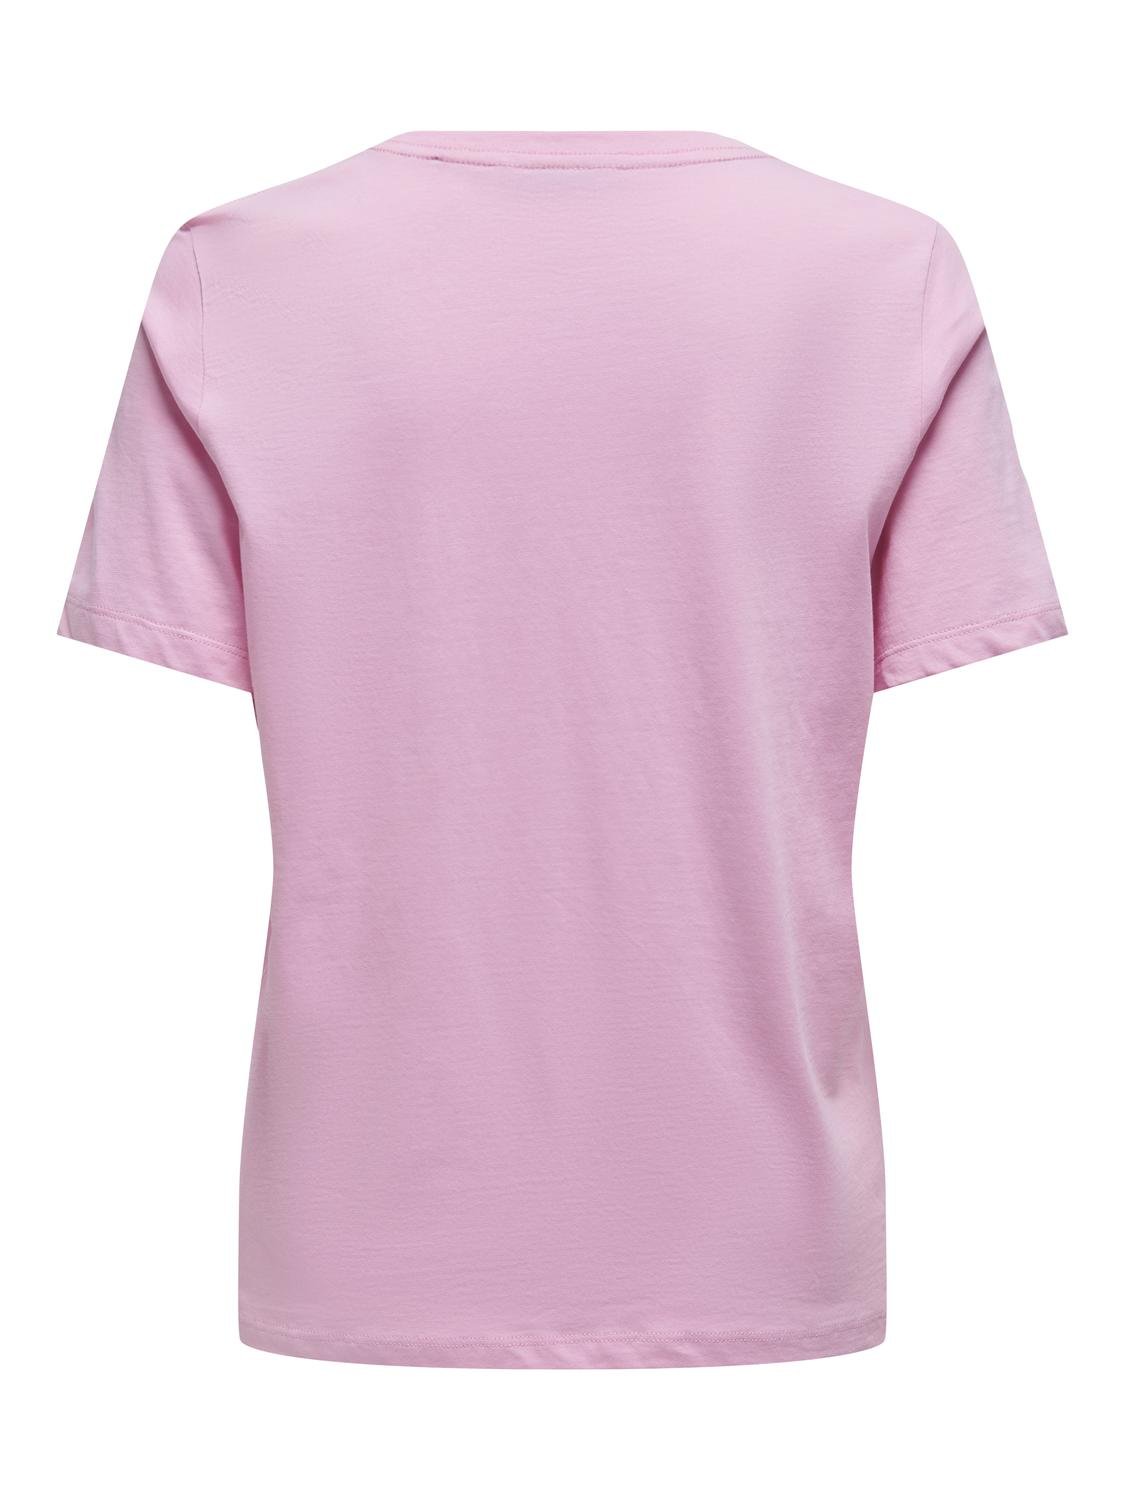 PGAMAZE T-Shirt - Bonbon